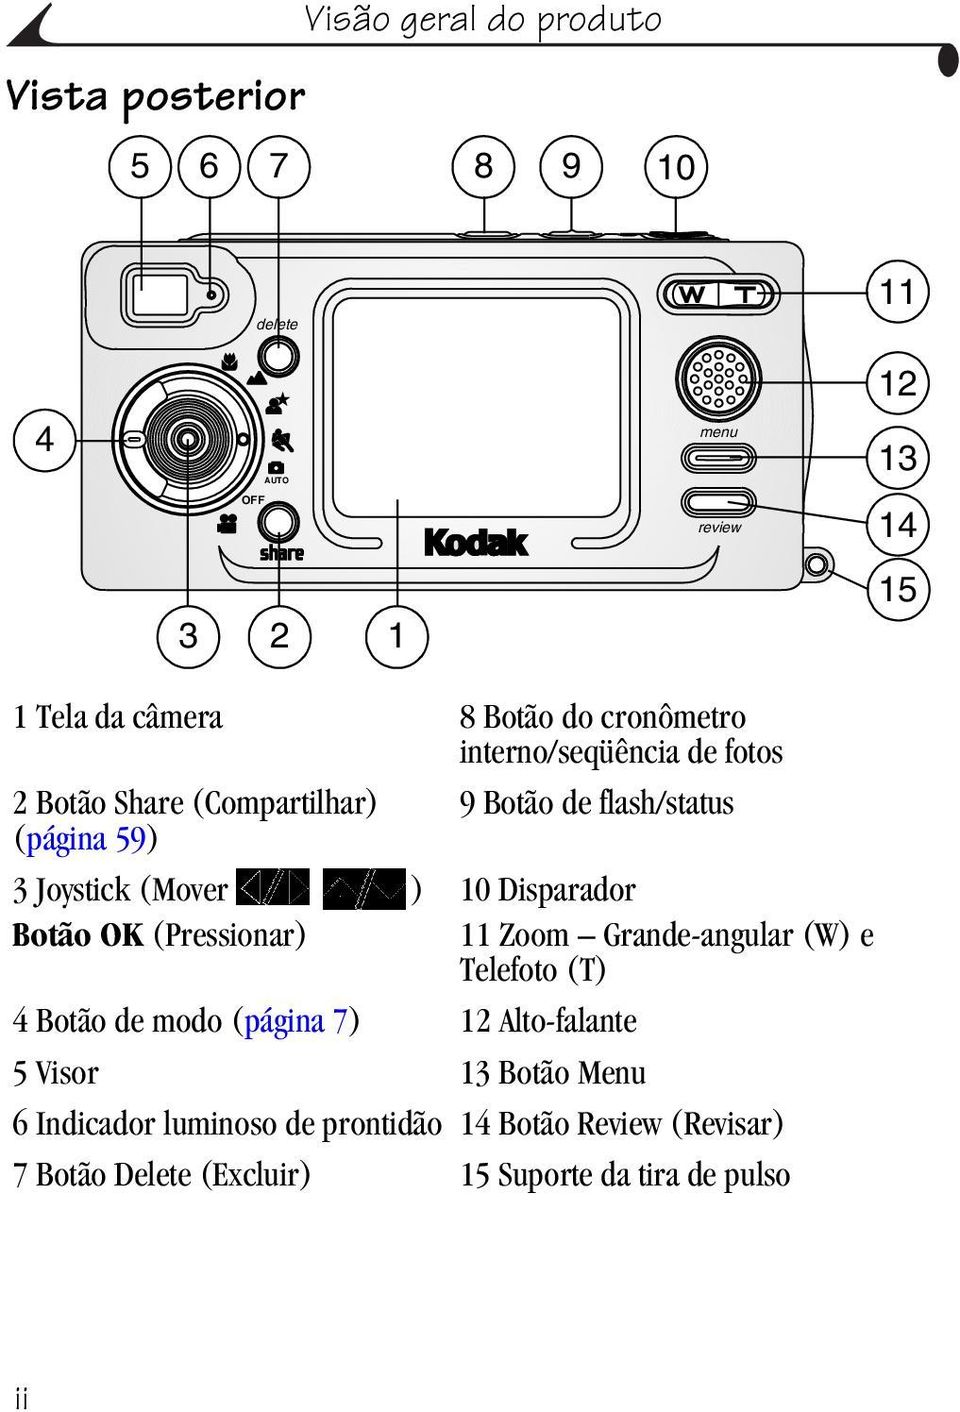 Botão OK (Pressionar) 10 Disparador 11 Zoom Grande-angular (W) e Telefoto (T) 4 Botão de modo (página 7) 12 Alto-falante 5